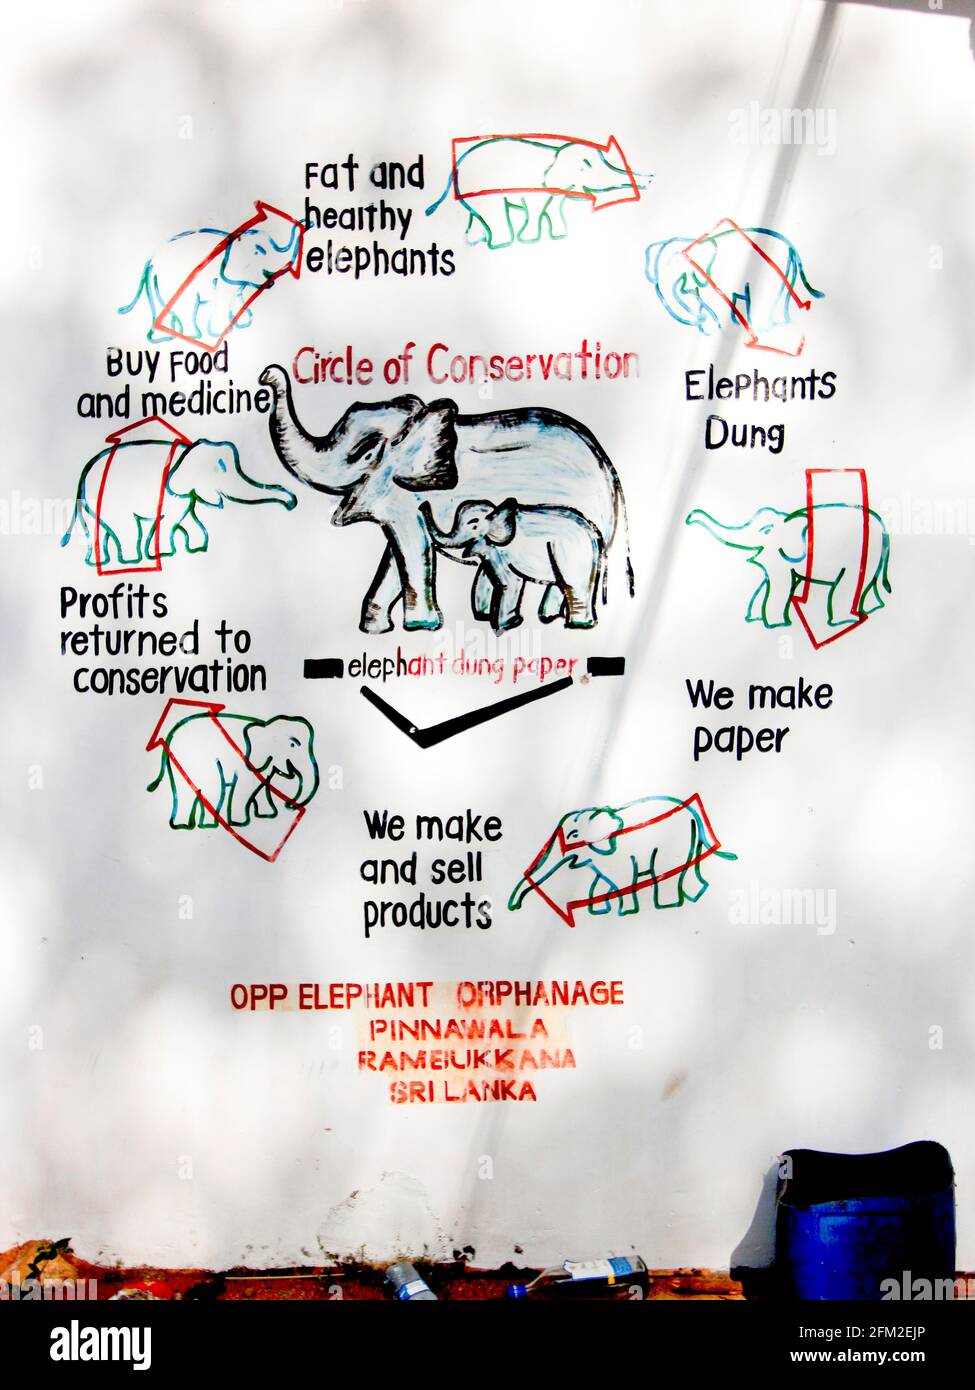 Ein handbemaltes Schild für Papier aus Elefantenmist, das den Kreis der Erhaltung zeigt. Im Pinnawala Elephant waphanage Center in Sri Lanka. Stockfoto